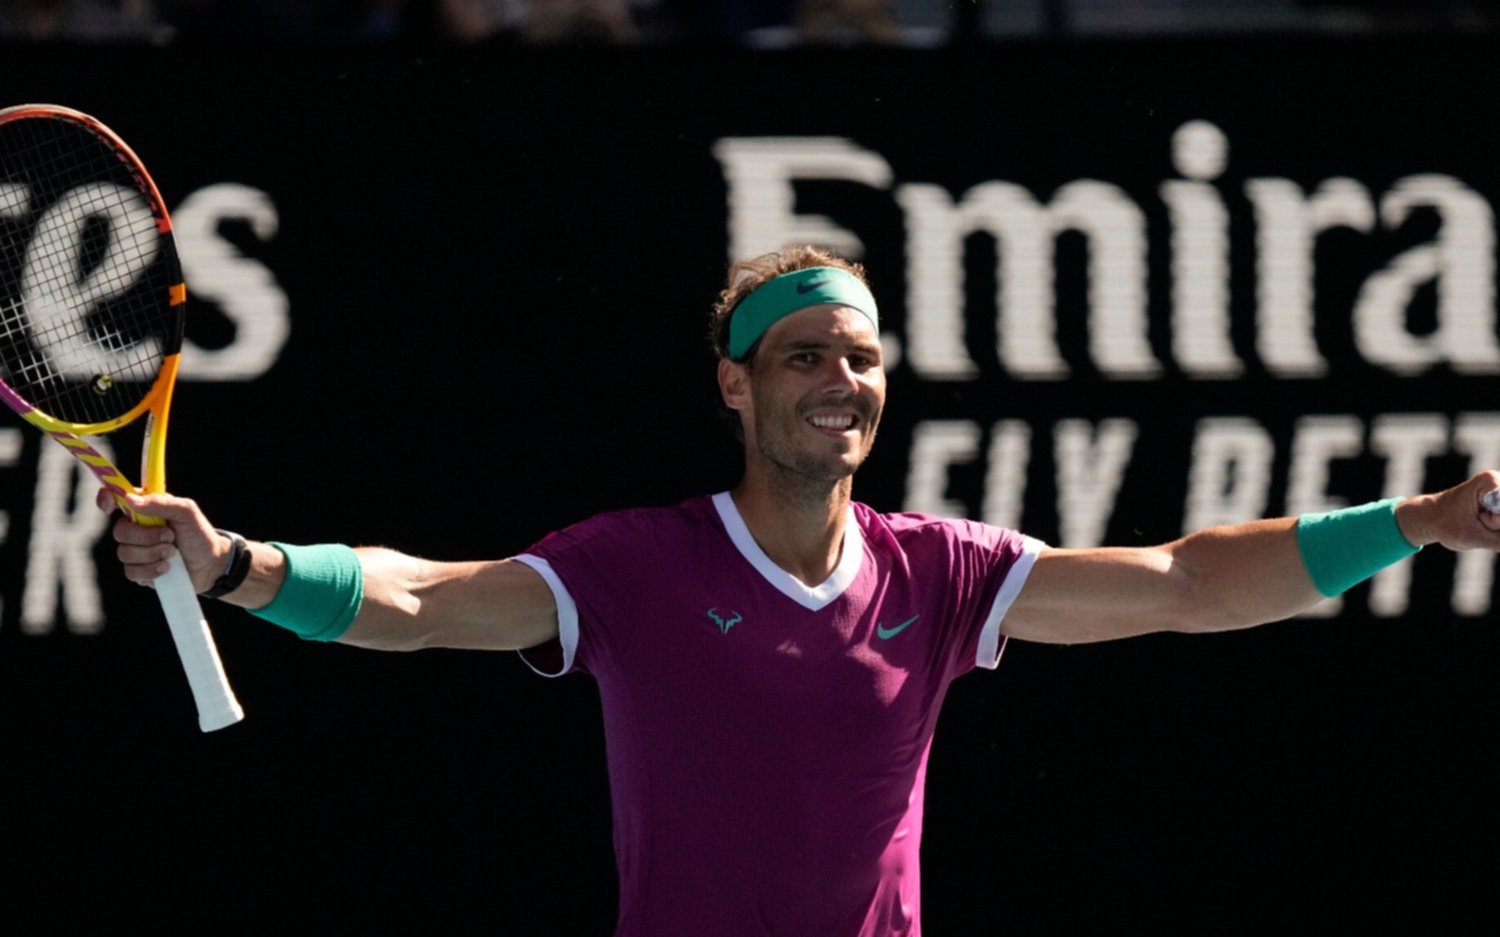 Sonríe Rafa Nadal en Australia: ganó, se instaló en cuartos y sueña con el título